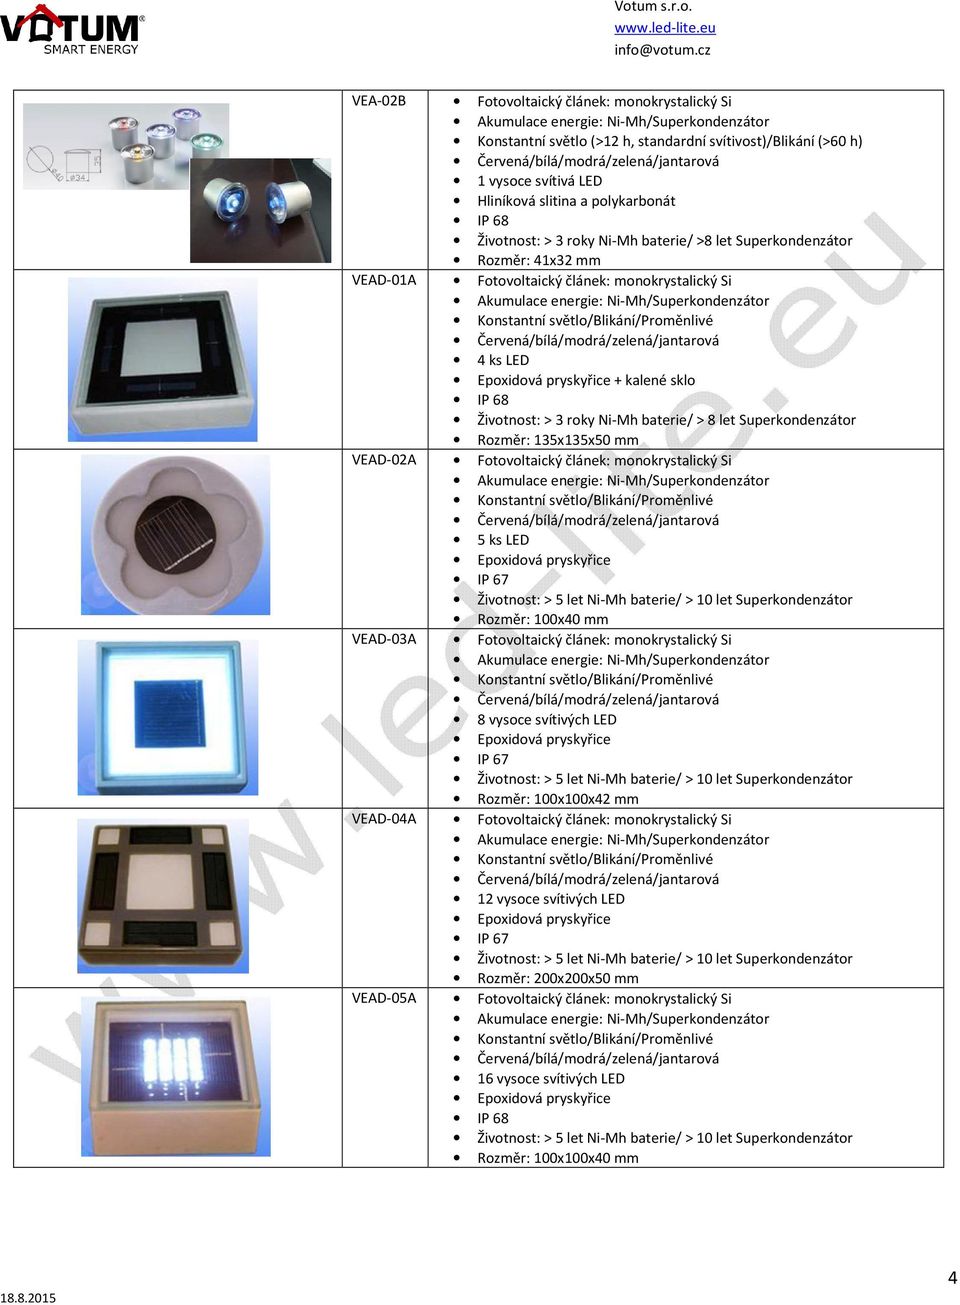 135x135x50 mm VEAD-02A Fotovoltaický článek: monokrystalický Si /Blikání/Proměnlivé 5 ks LED Rozměr: 100x40 mm VEAD-03A Fotovoltaický článek: monokrystalický Si /Blikání/Proměnlivé Rozměr: 100x100x42